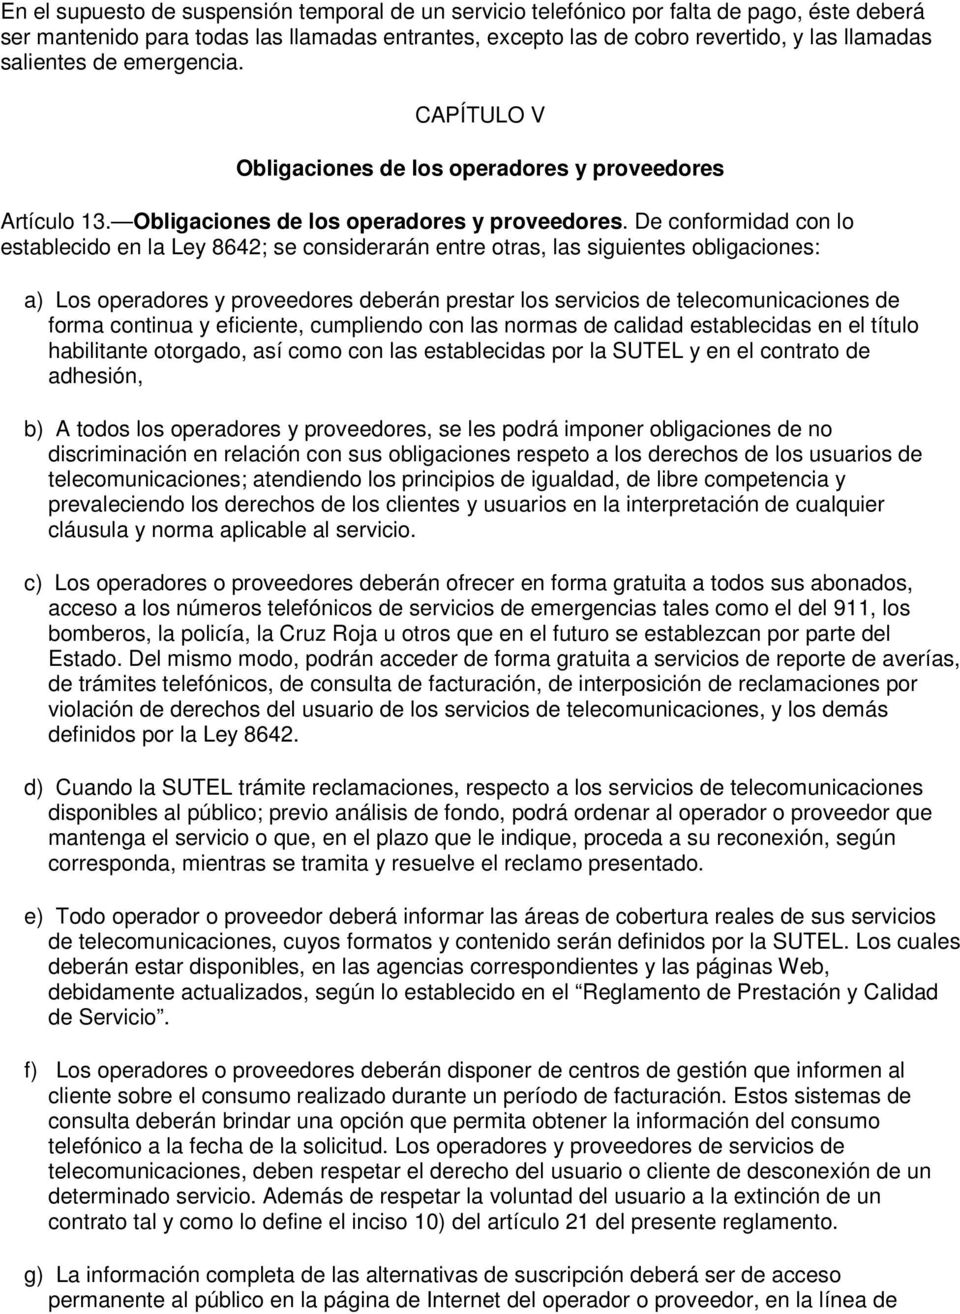 Artículo 13. Obligaciones de los operadores y proveedores.